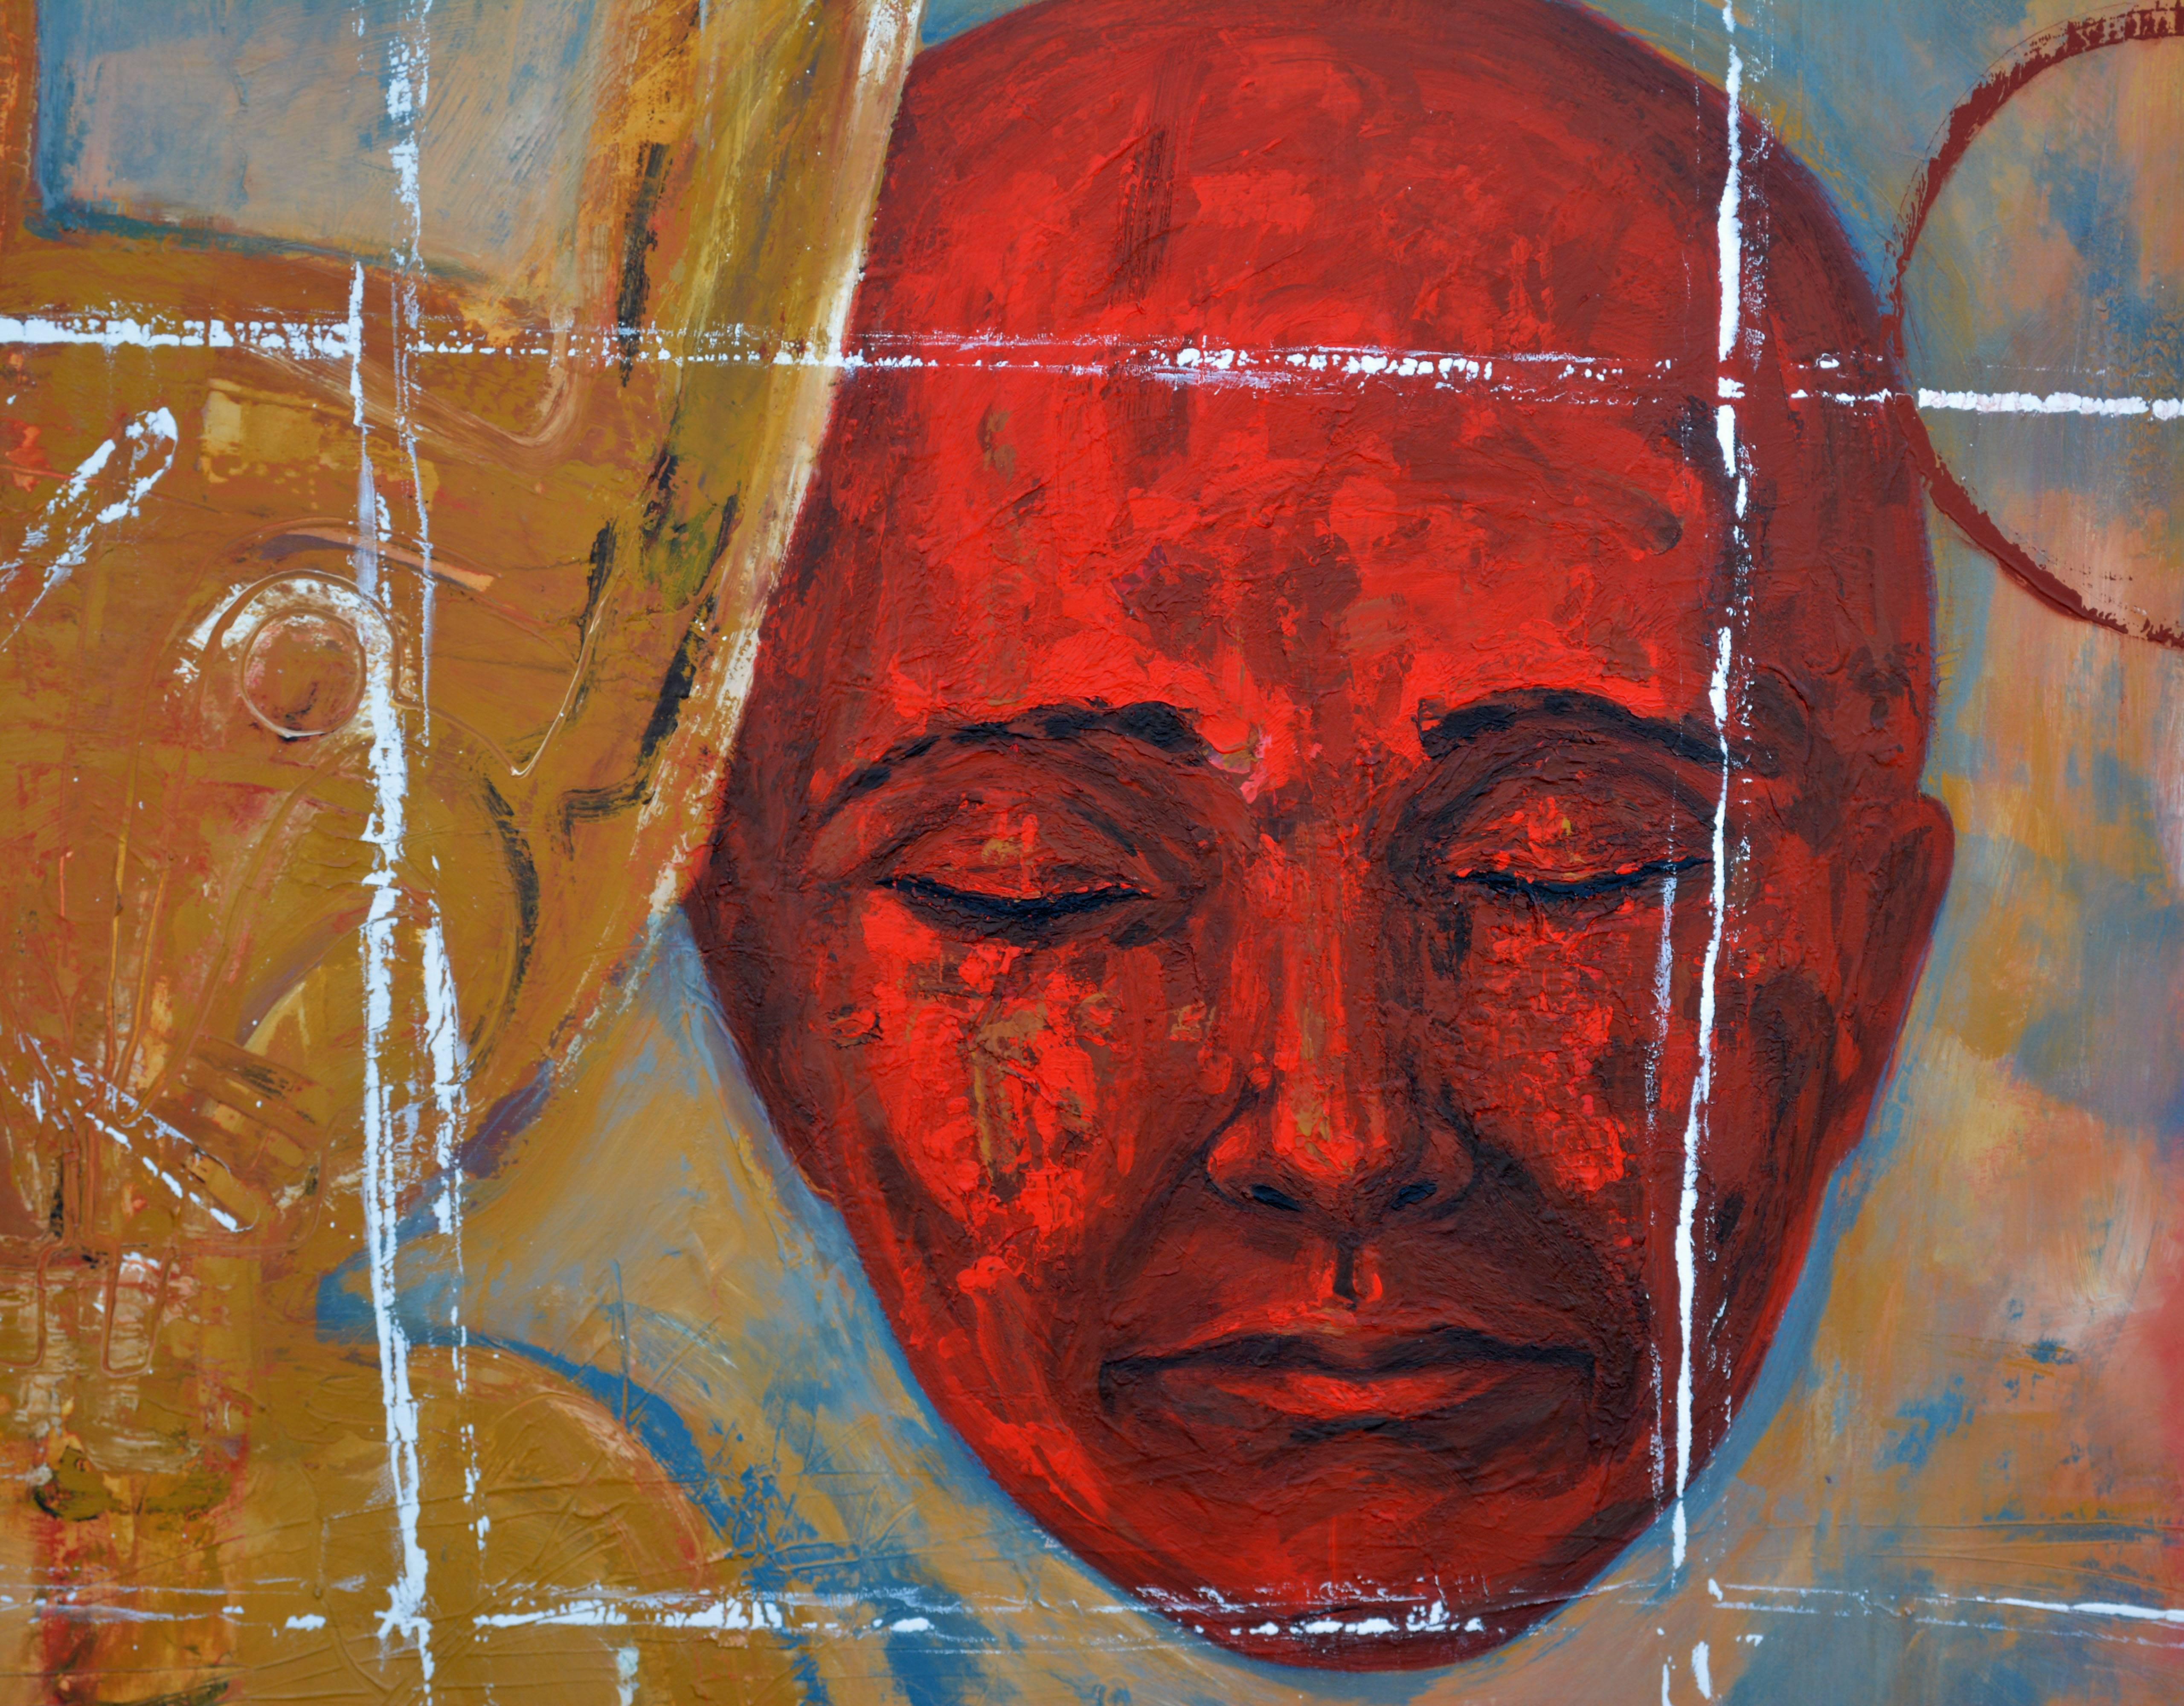 Painted 'Equilibrio' Huge Important Abstract Oil by Carlos Montes De Oca, Havana Cuba